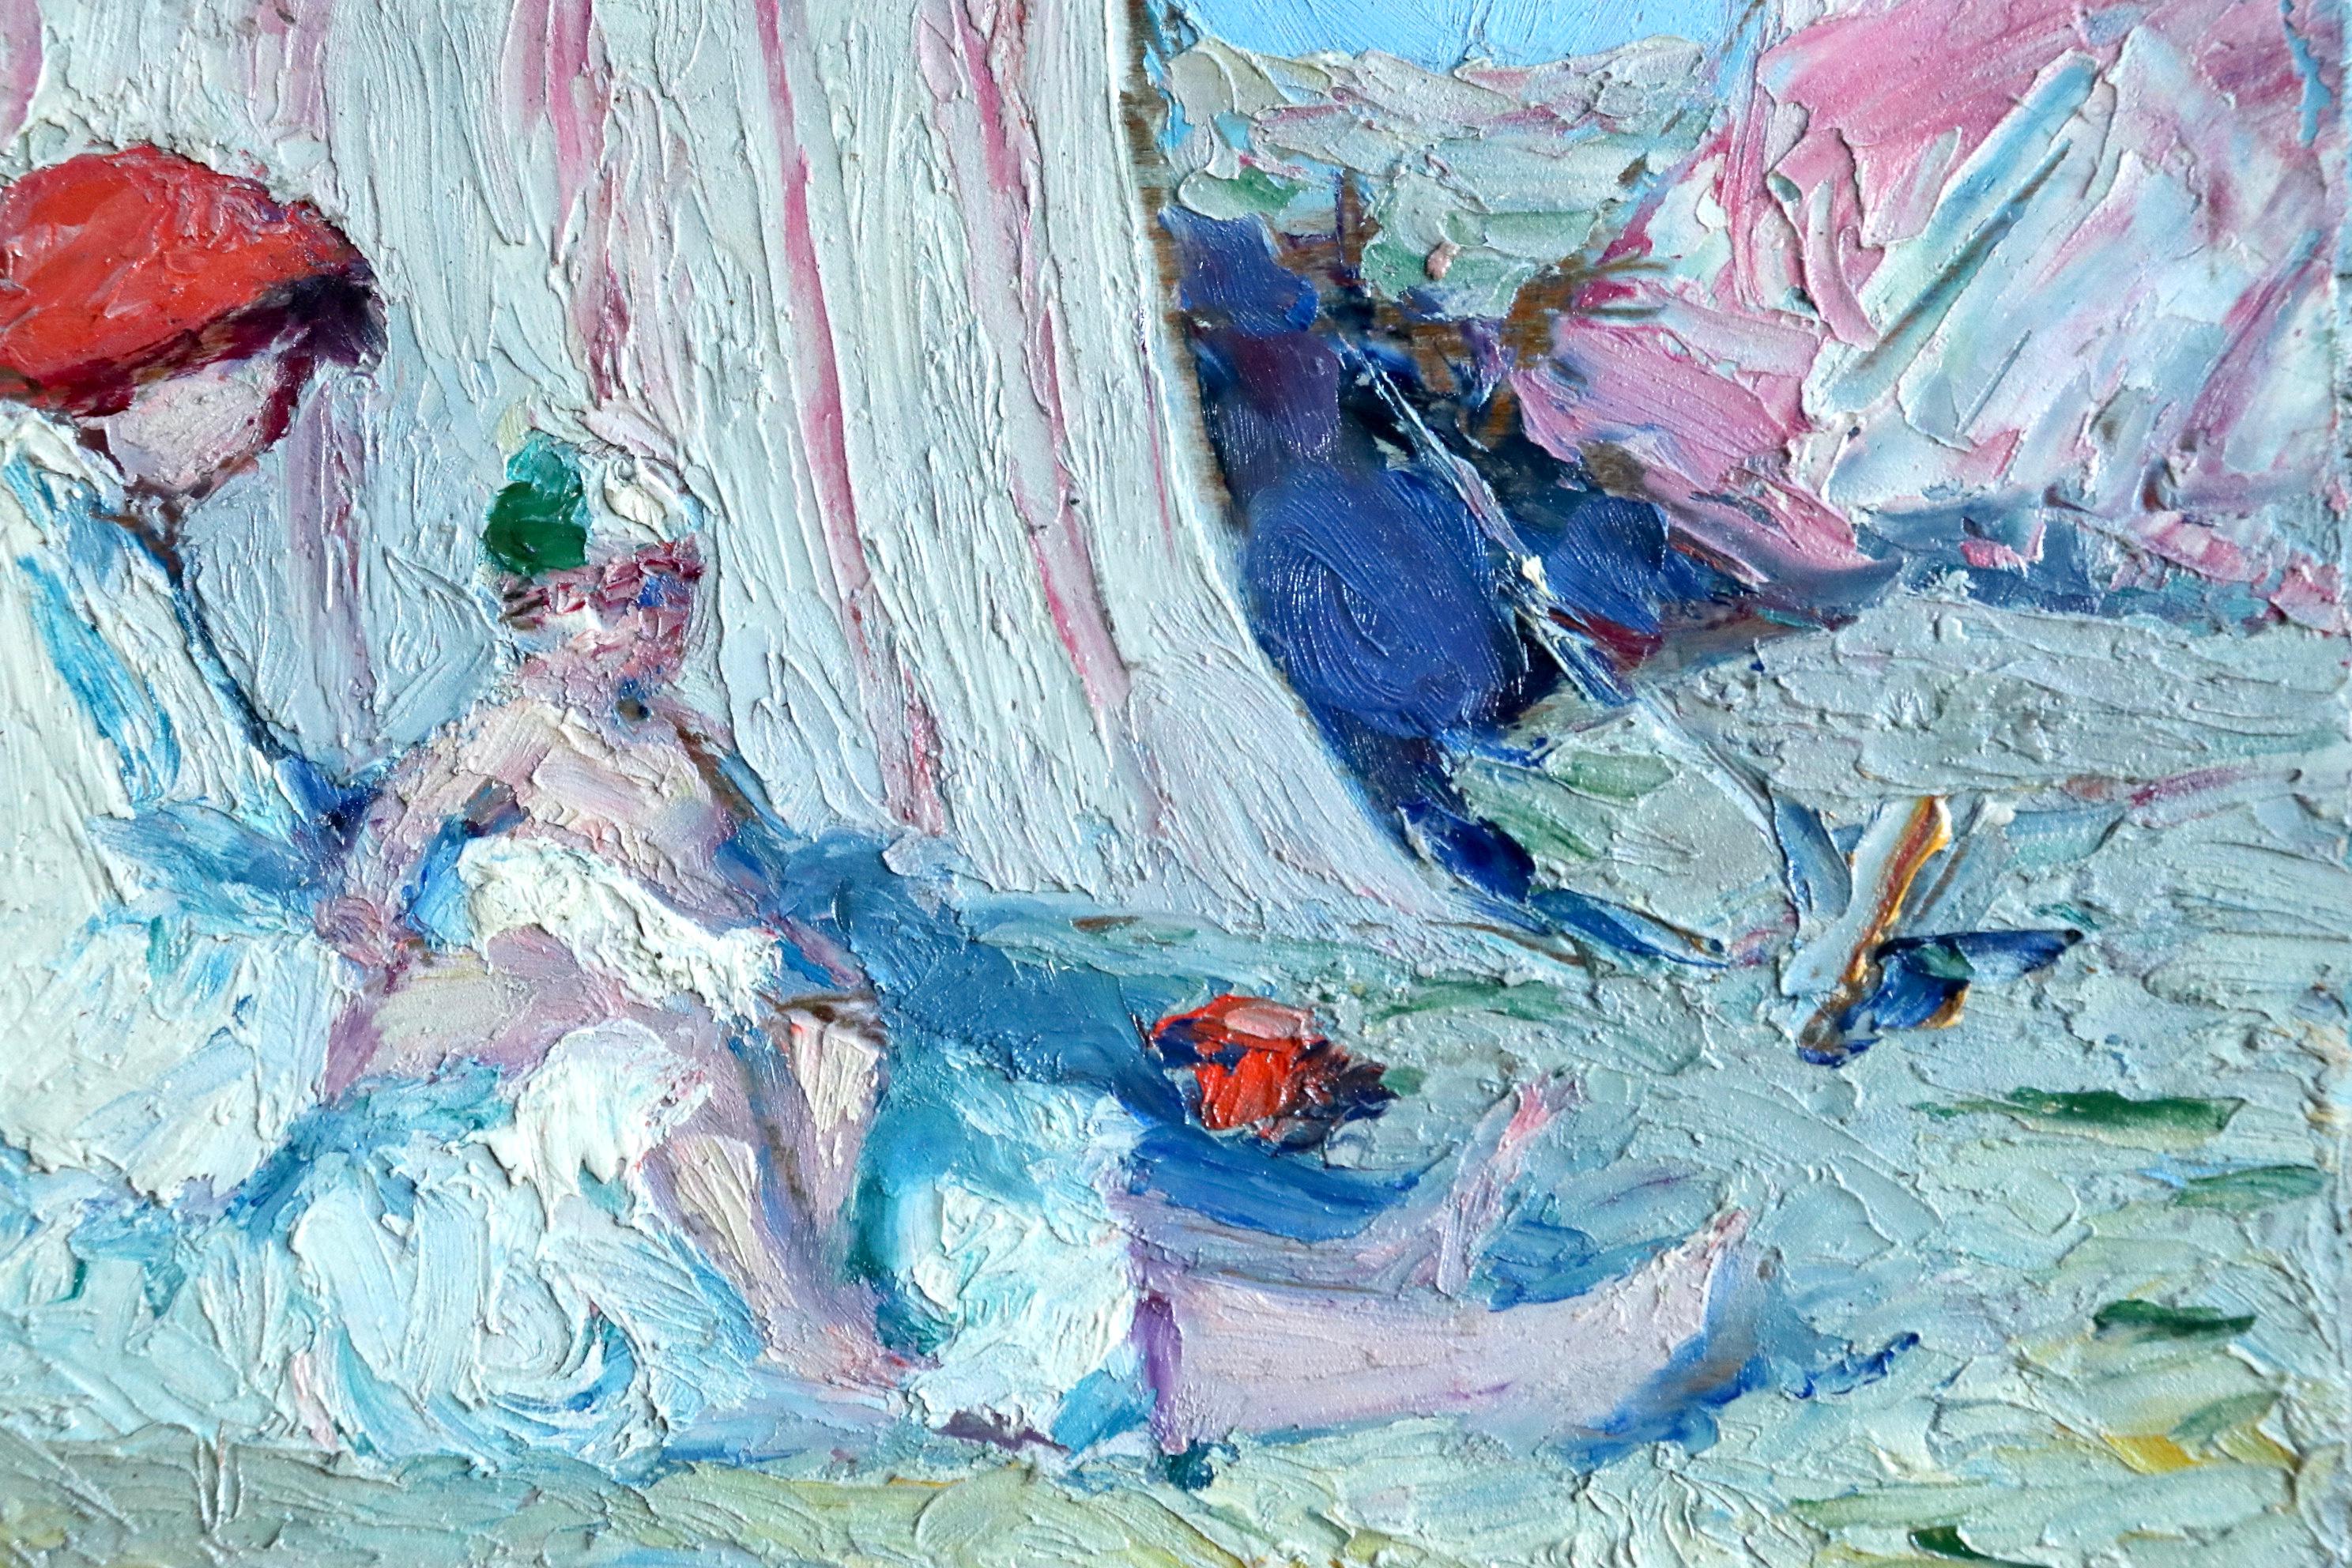 Mere et enfant sur la plage - Post Impressionist, Figures on Beach - B Biancale - Painting by Bernardo Biancale